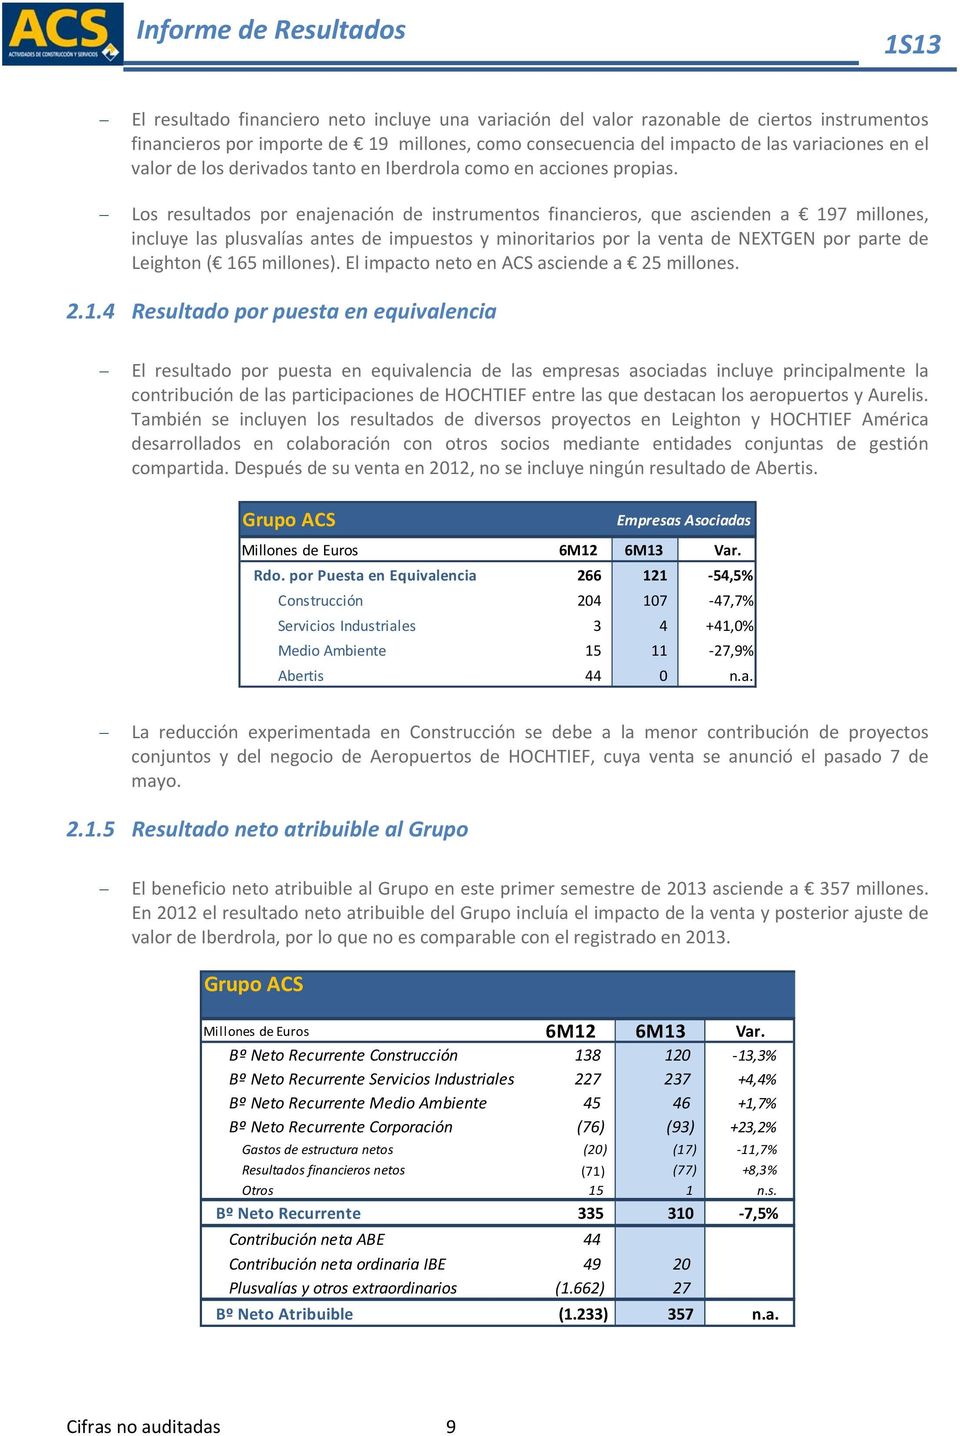 Los resultados por enajenación de instrumentos financieros, que ascienden a 197 millones, incluye las plusvalías antes de impuestos y minoritarios por la venta de NEXTGEN por parte de Leighton ( 165